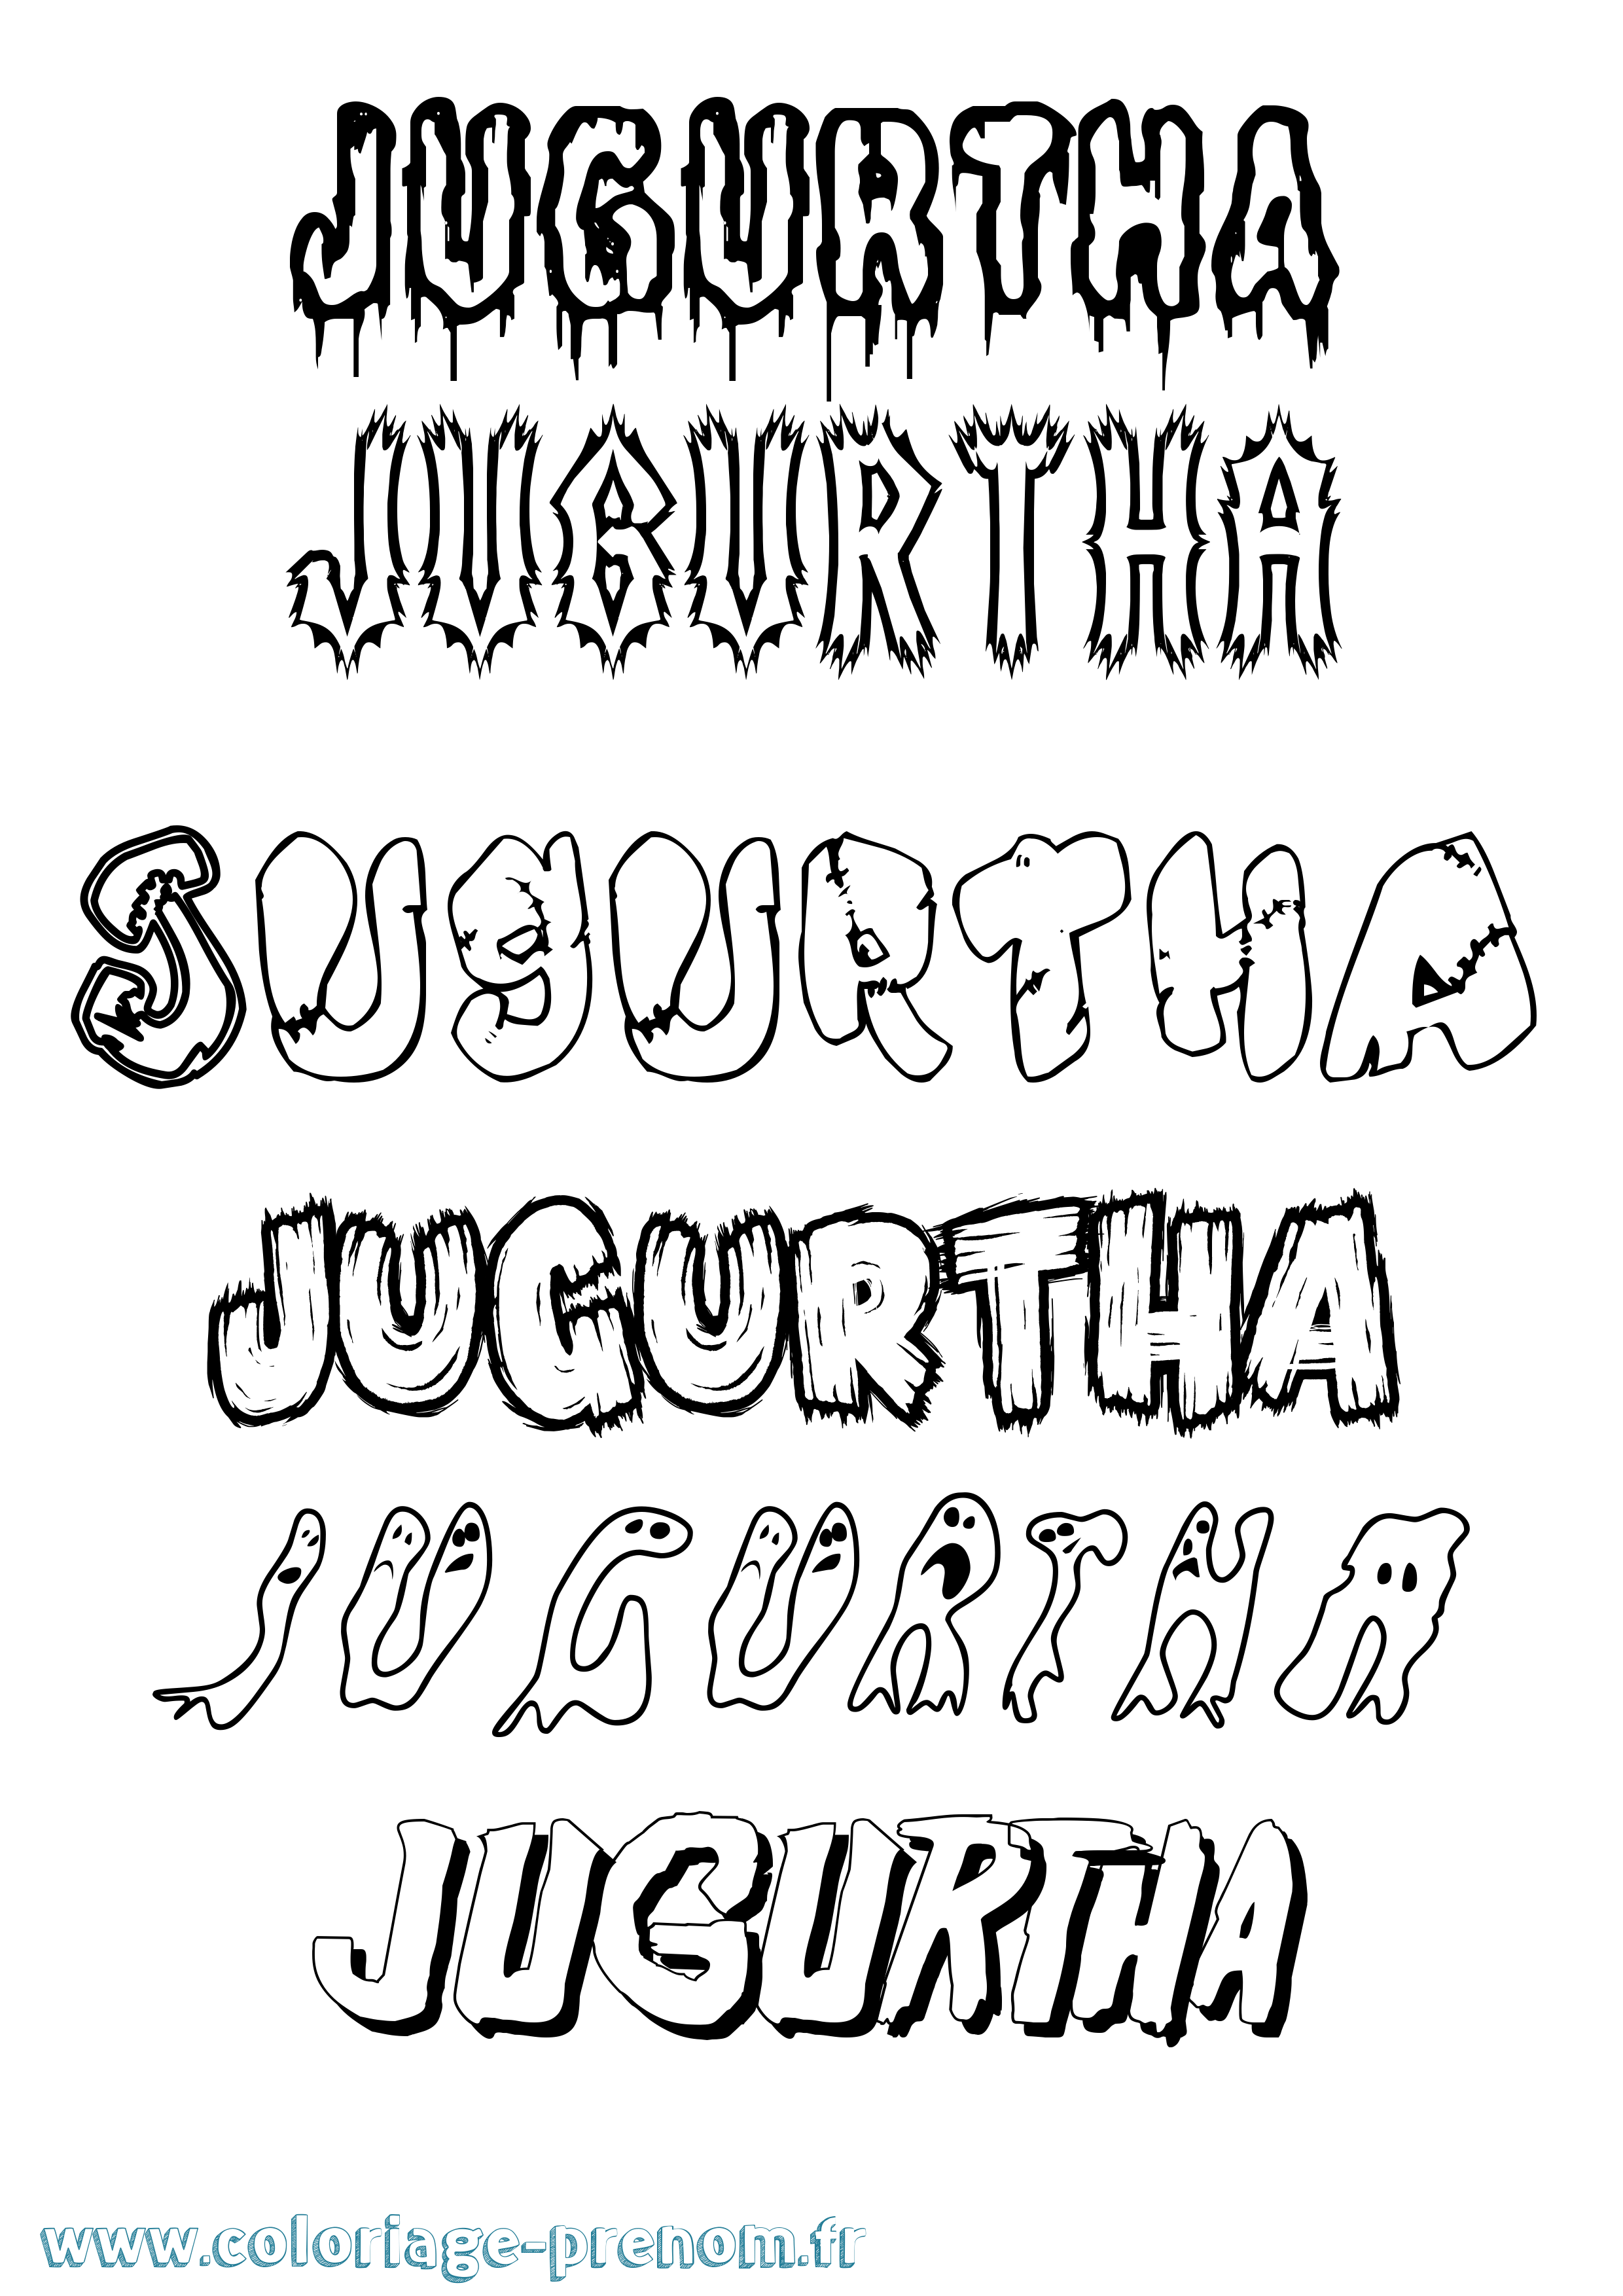 Coloriage prénom Jugurtha Frisson